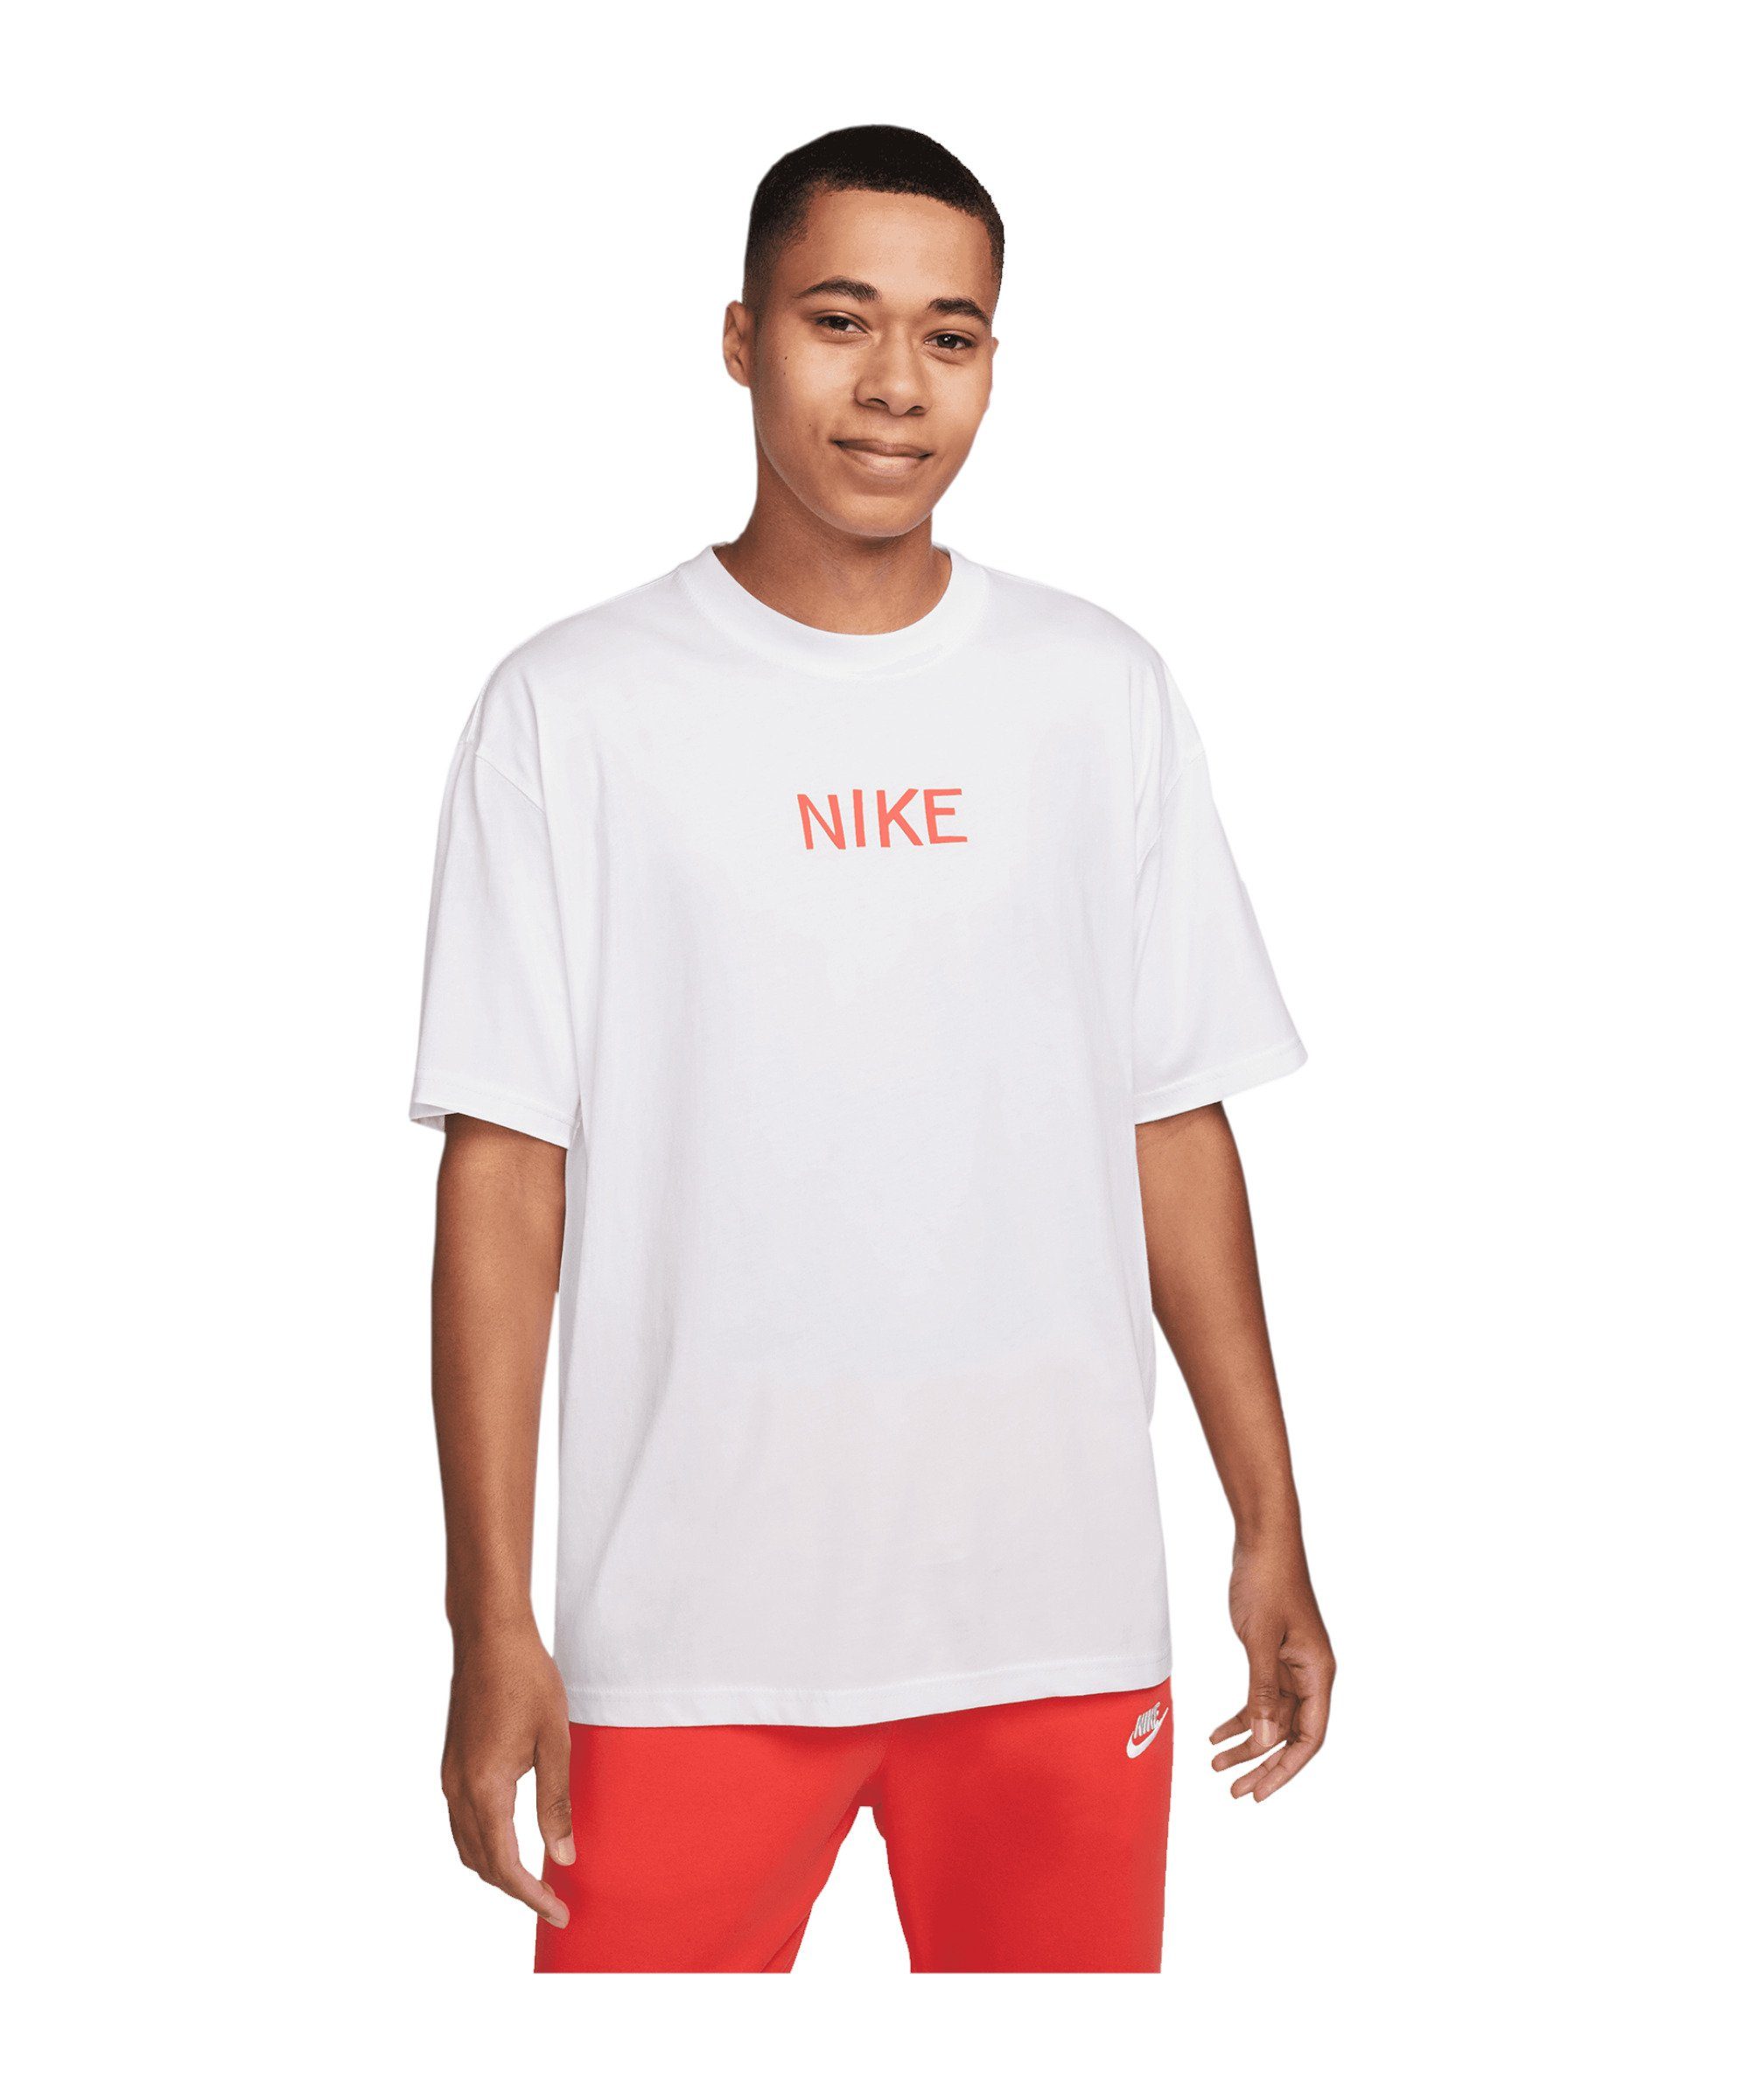 T-Shirt Sportswear weiss Nike Max90 T-Shirt default